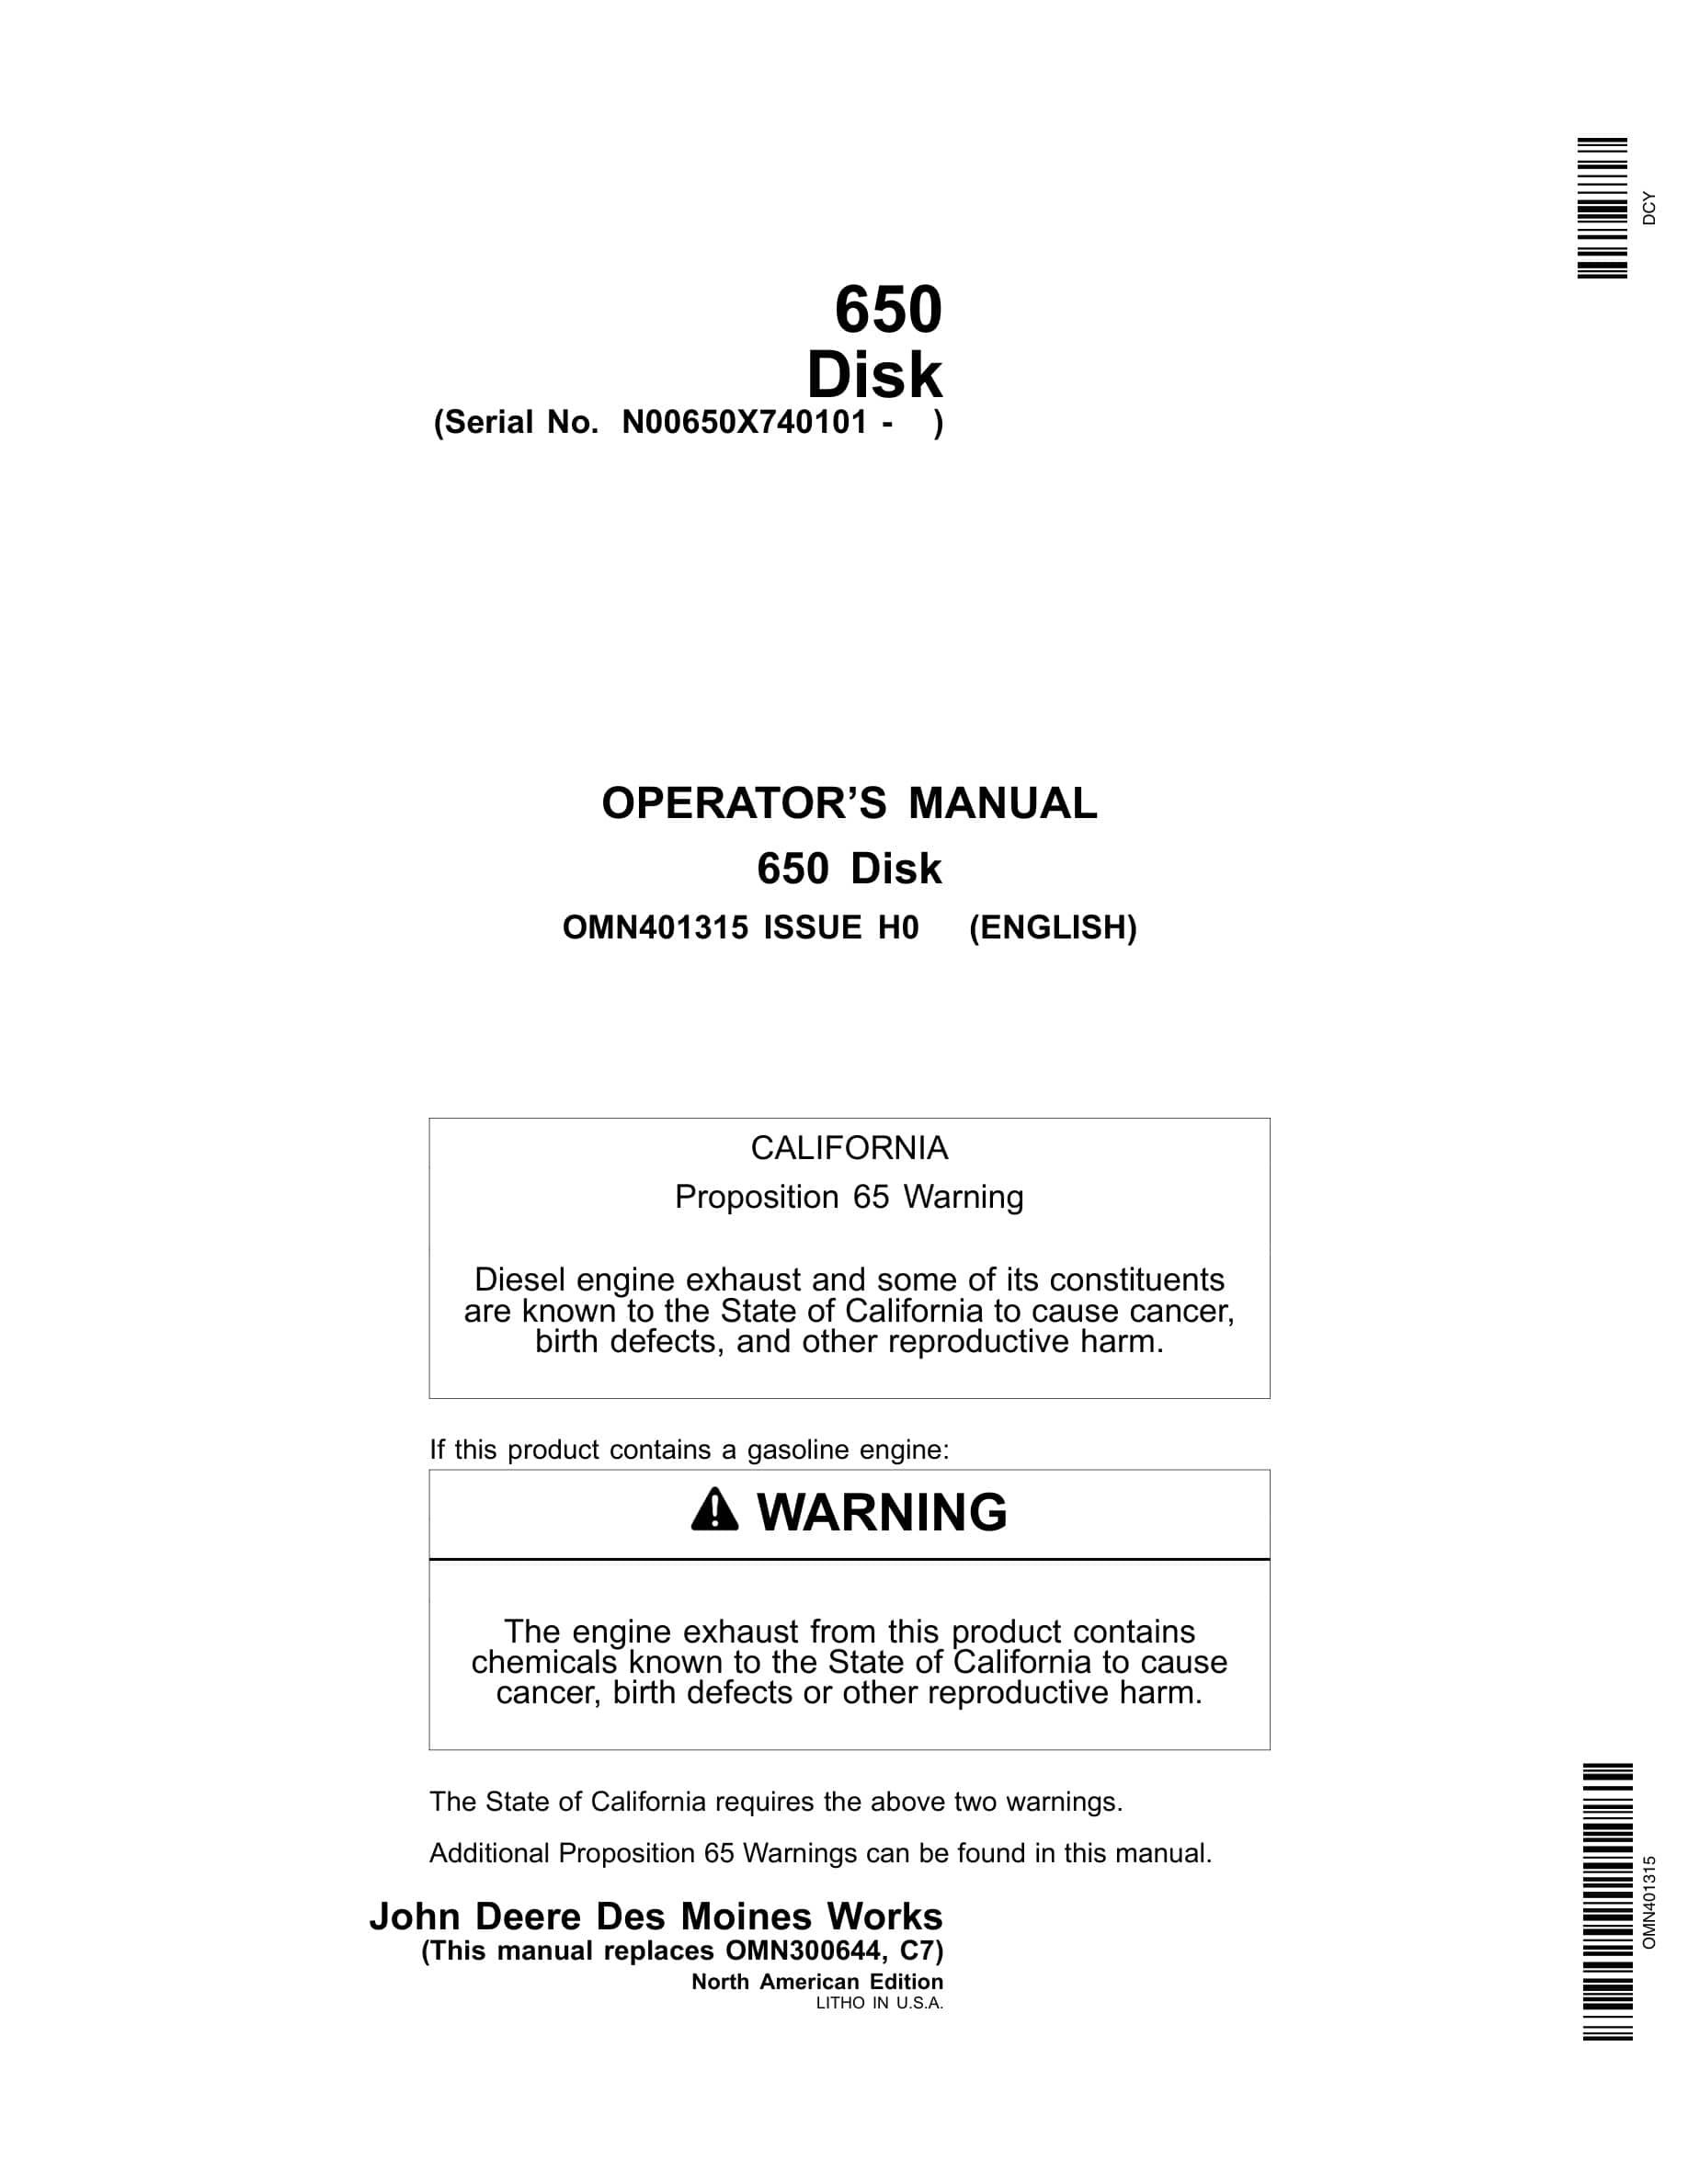 John Deere 650 Disk Operator Manual OMN401315-1